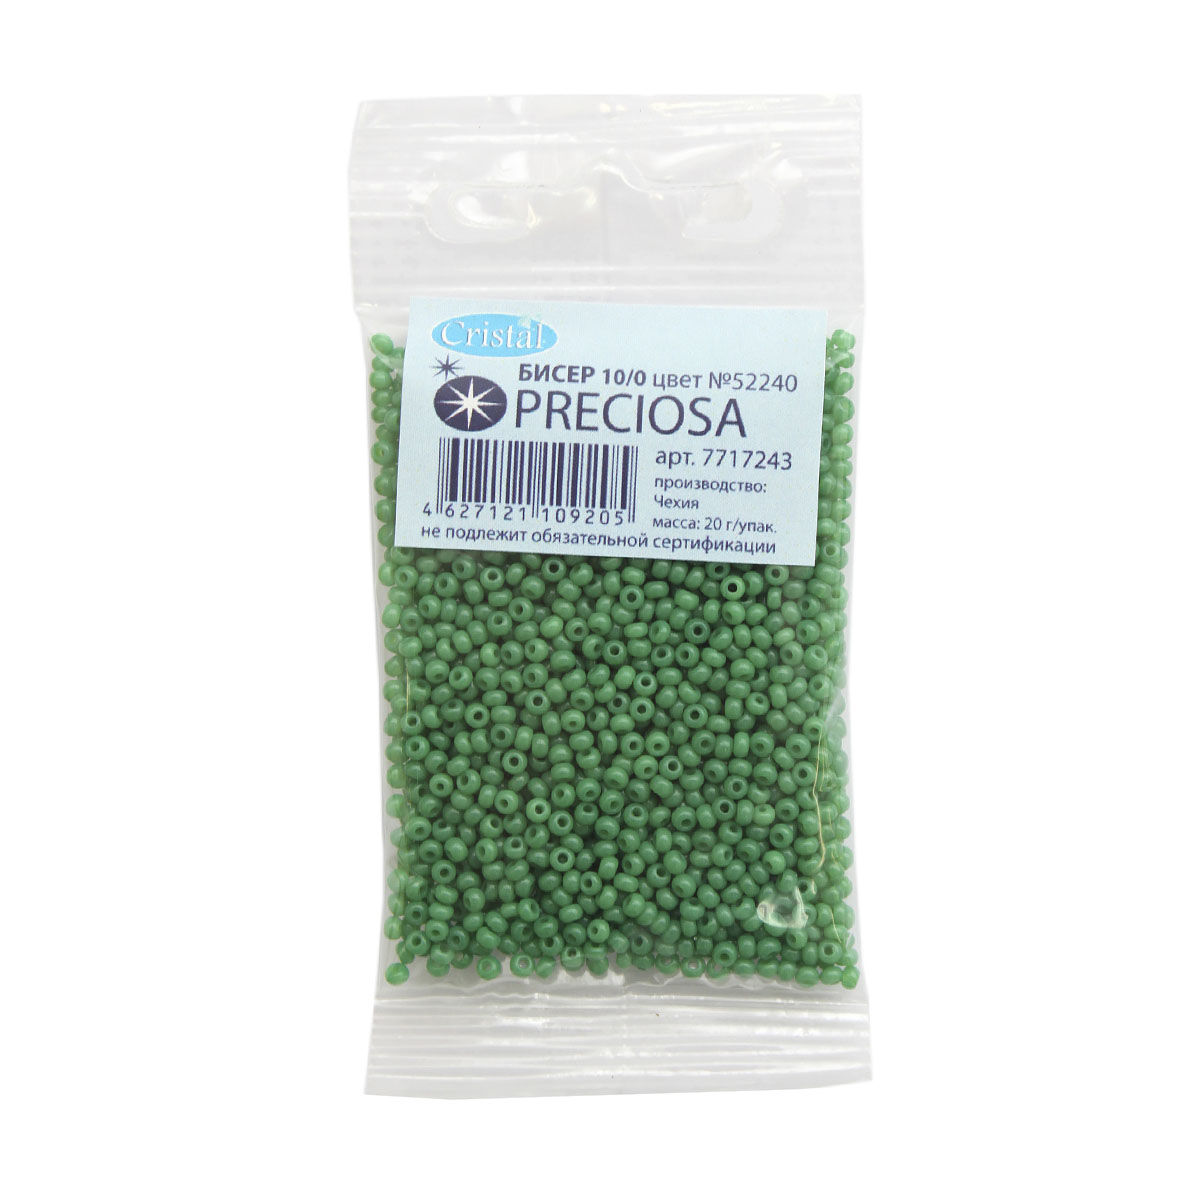 Бисер Preciosa чешский полупрозрачный 10/0 20 гр Прециоза 52240 темно-зеленый - фото 3